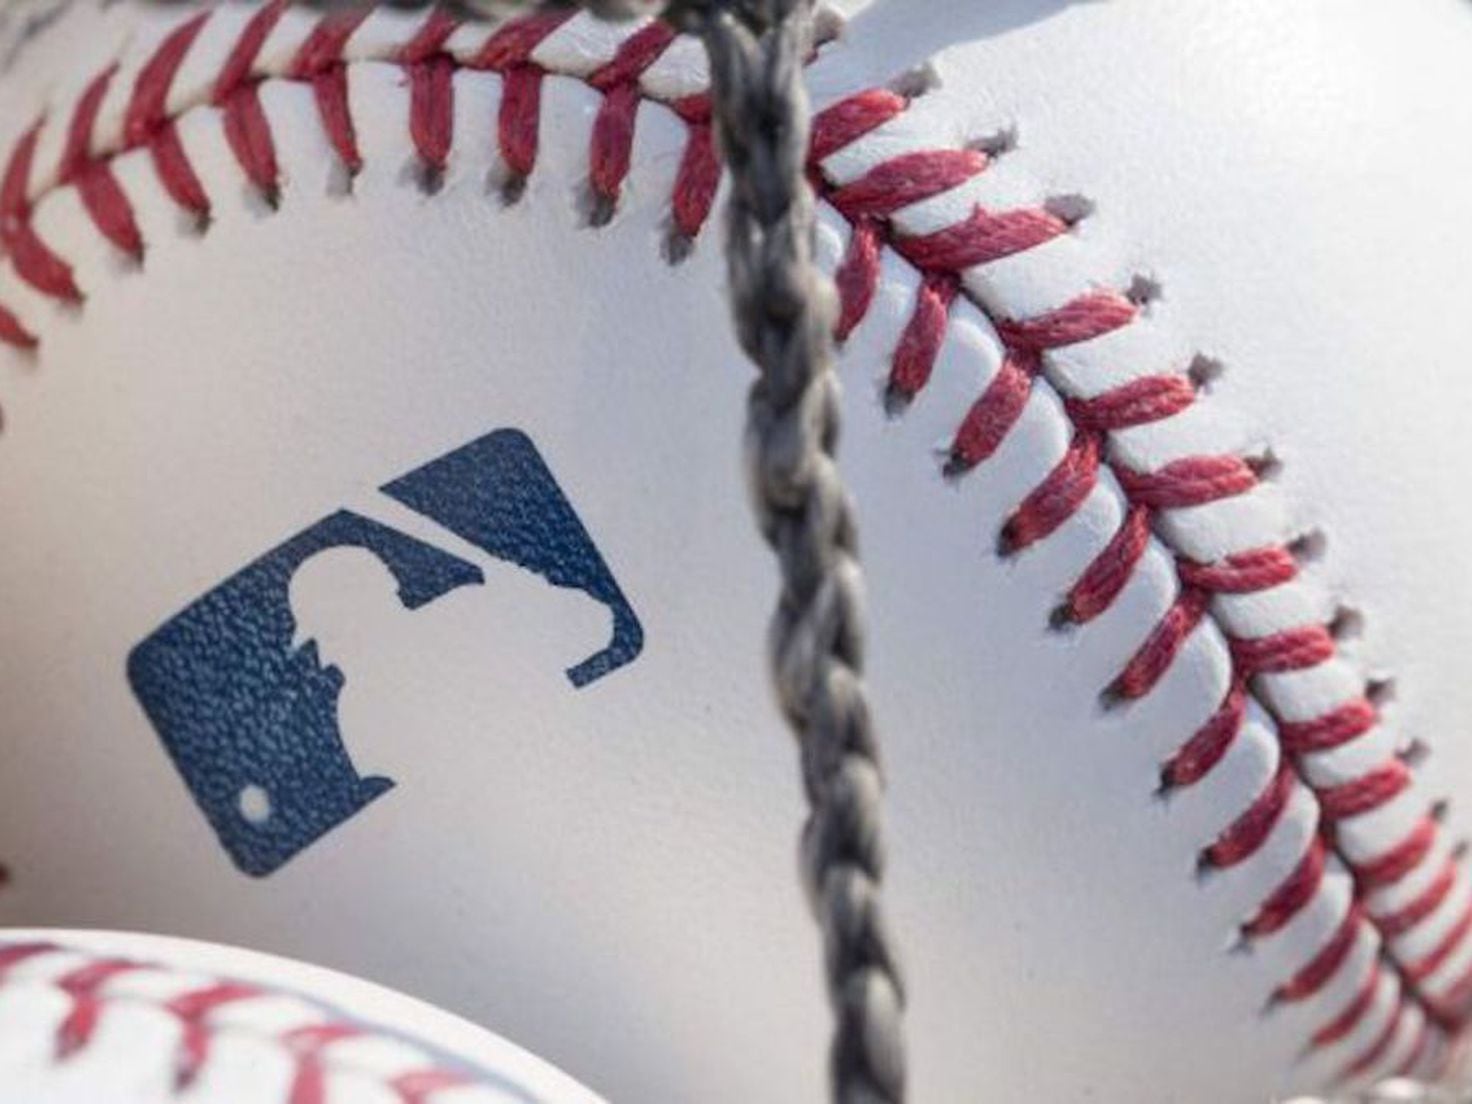 MLB lockout: Why MLB, MLBPA want to make bases bigger 